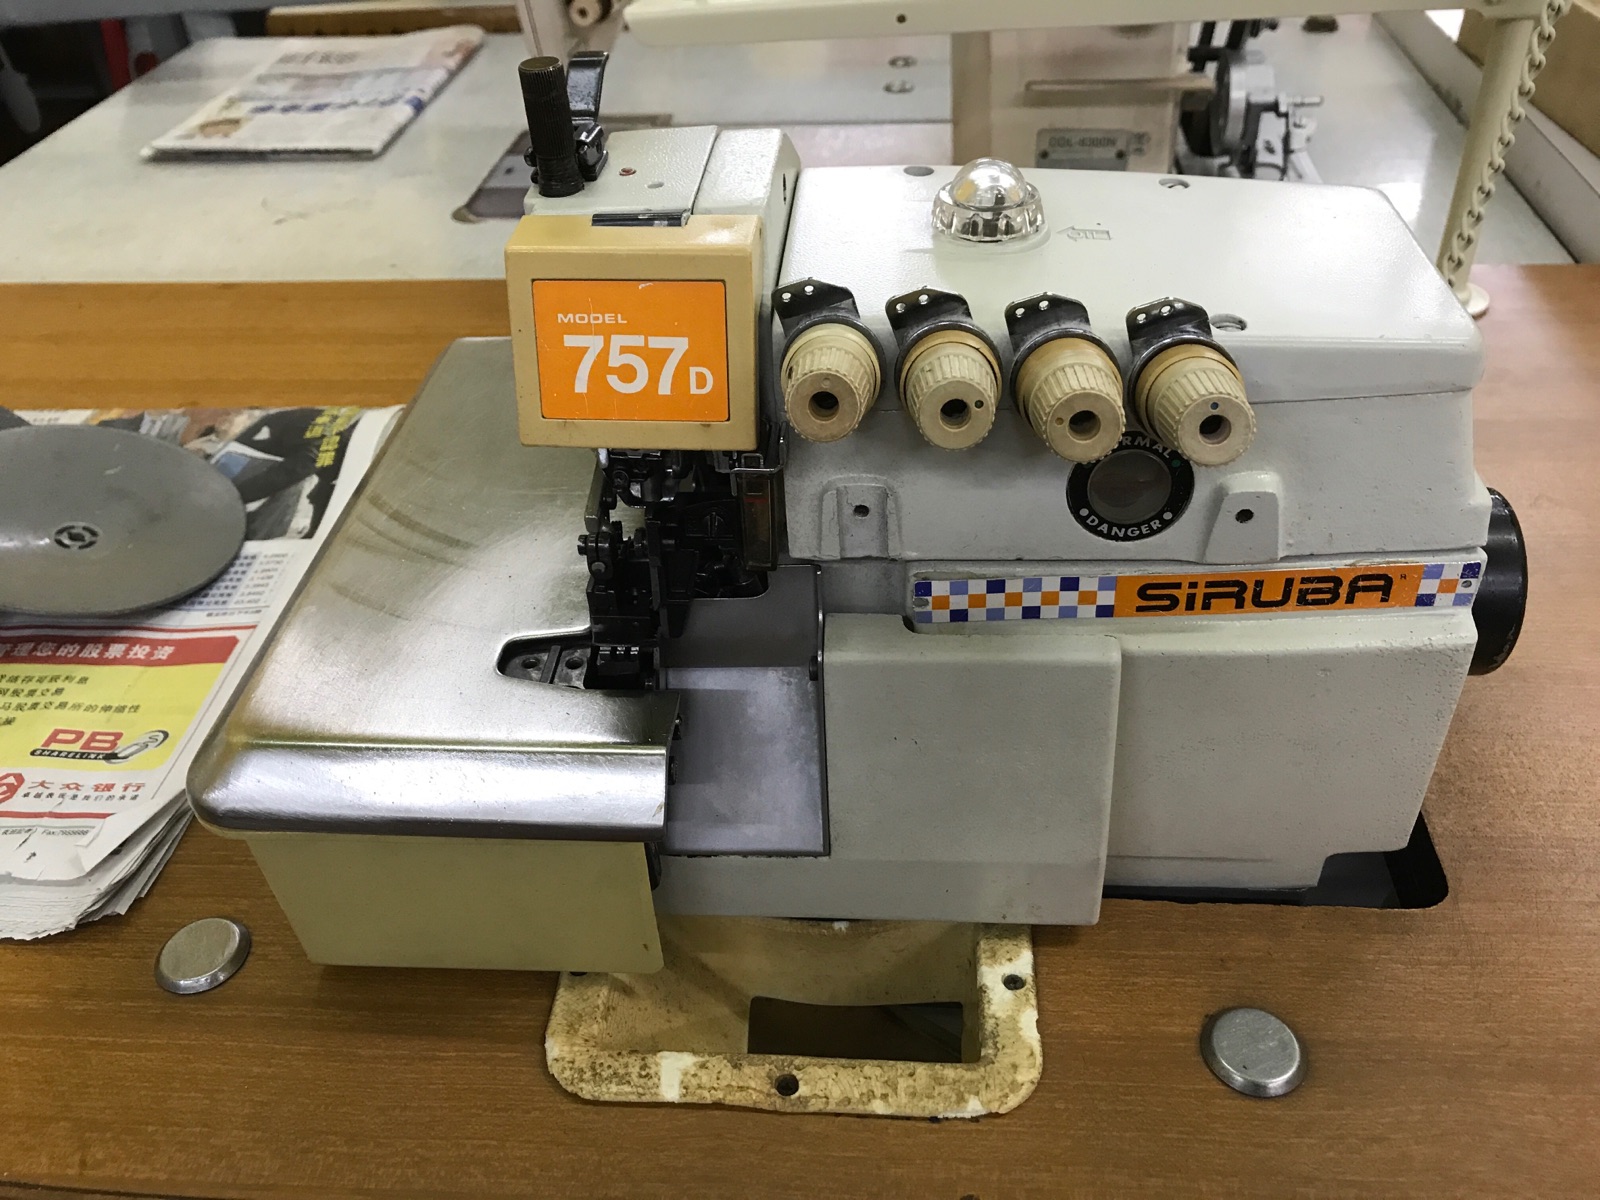 Siruba Overlock Sewing Machine 